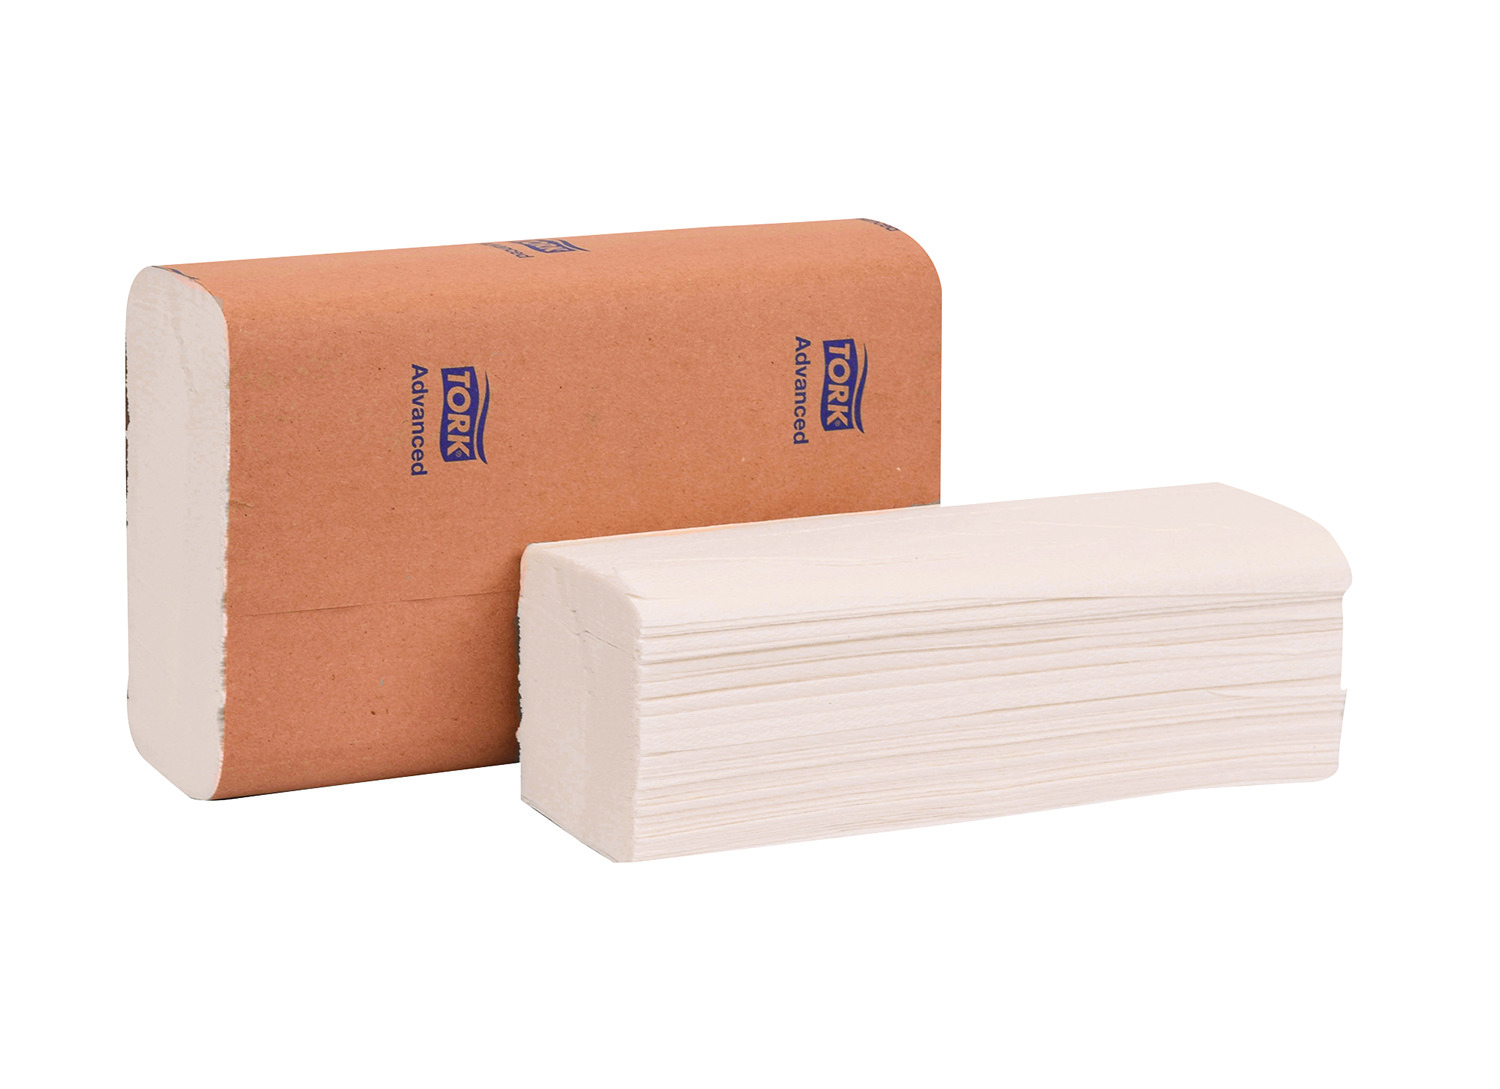 424824 Tork Adv White
Multifold Hand Towel 9X9.5
250/Pack, 16 Packs/Case,
4000/cs 48140 424814